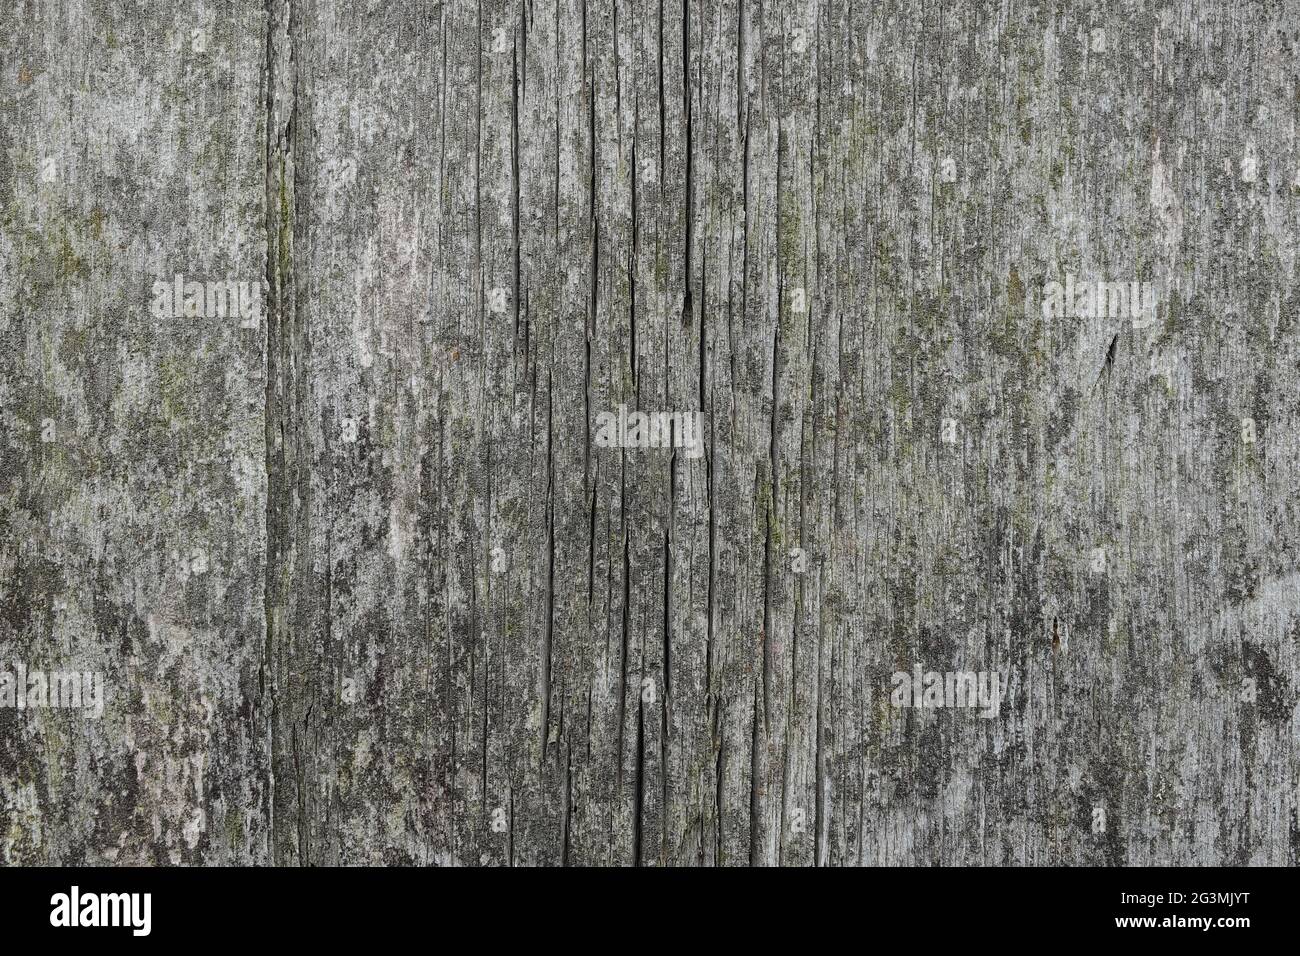 Die Textur alter rauer Holzplanken, die durch Zeit und Wetter geknackt sind. Stockfoto